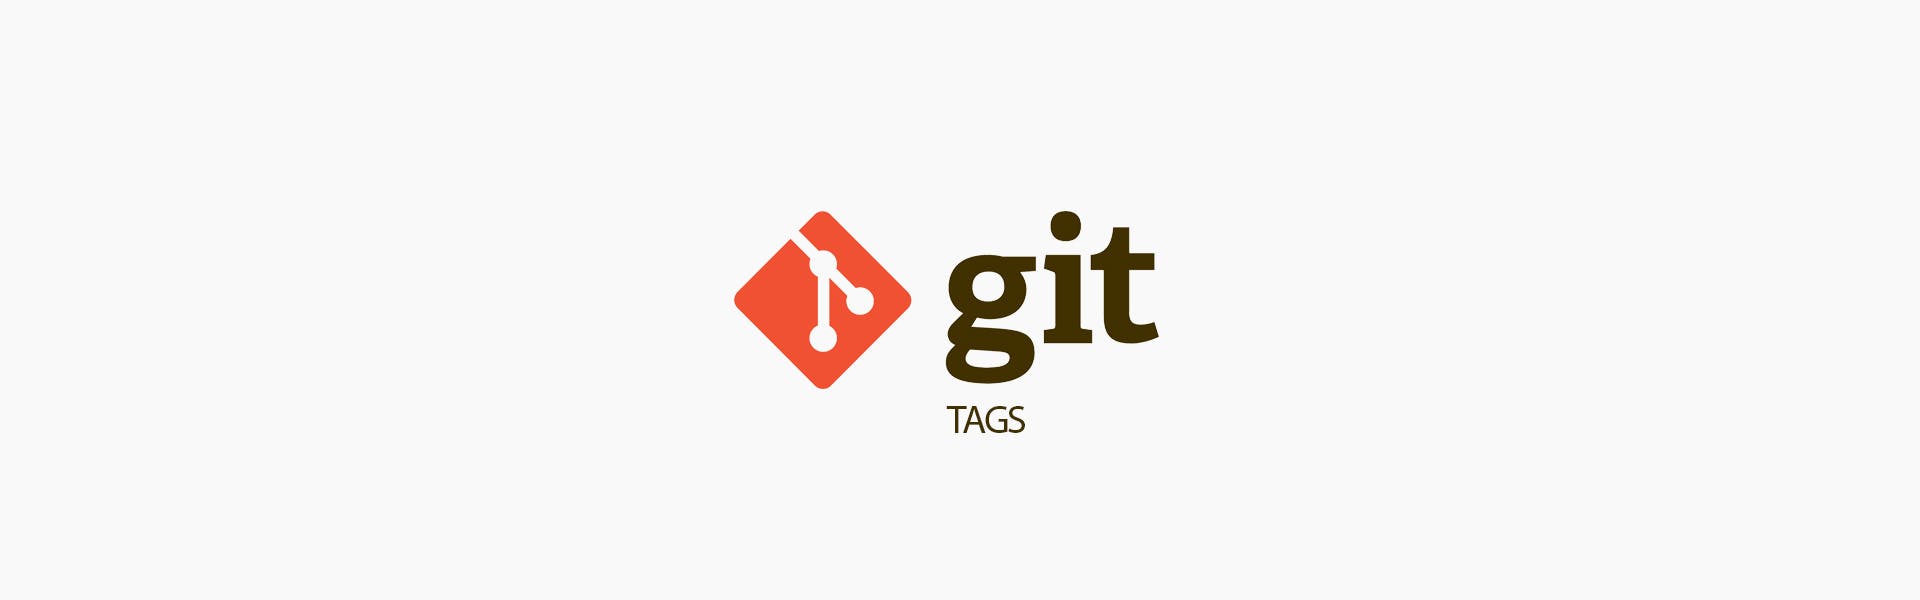 Cómo utilizar etiquetas en Git para marcar versiones importantes de tu proyecto